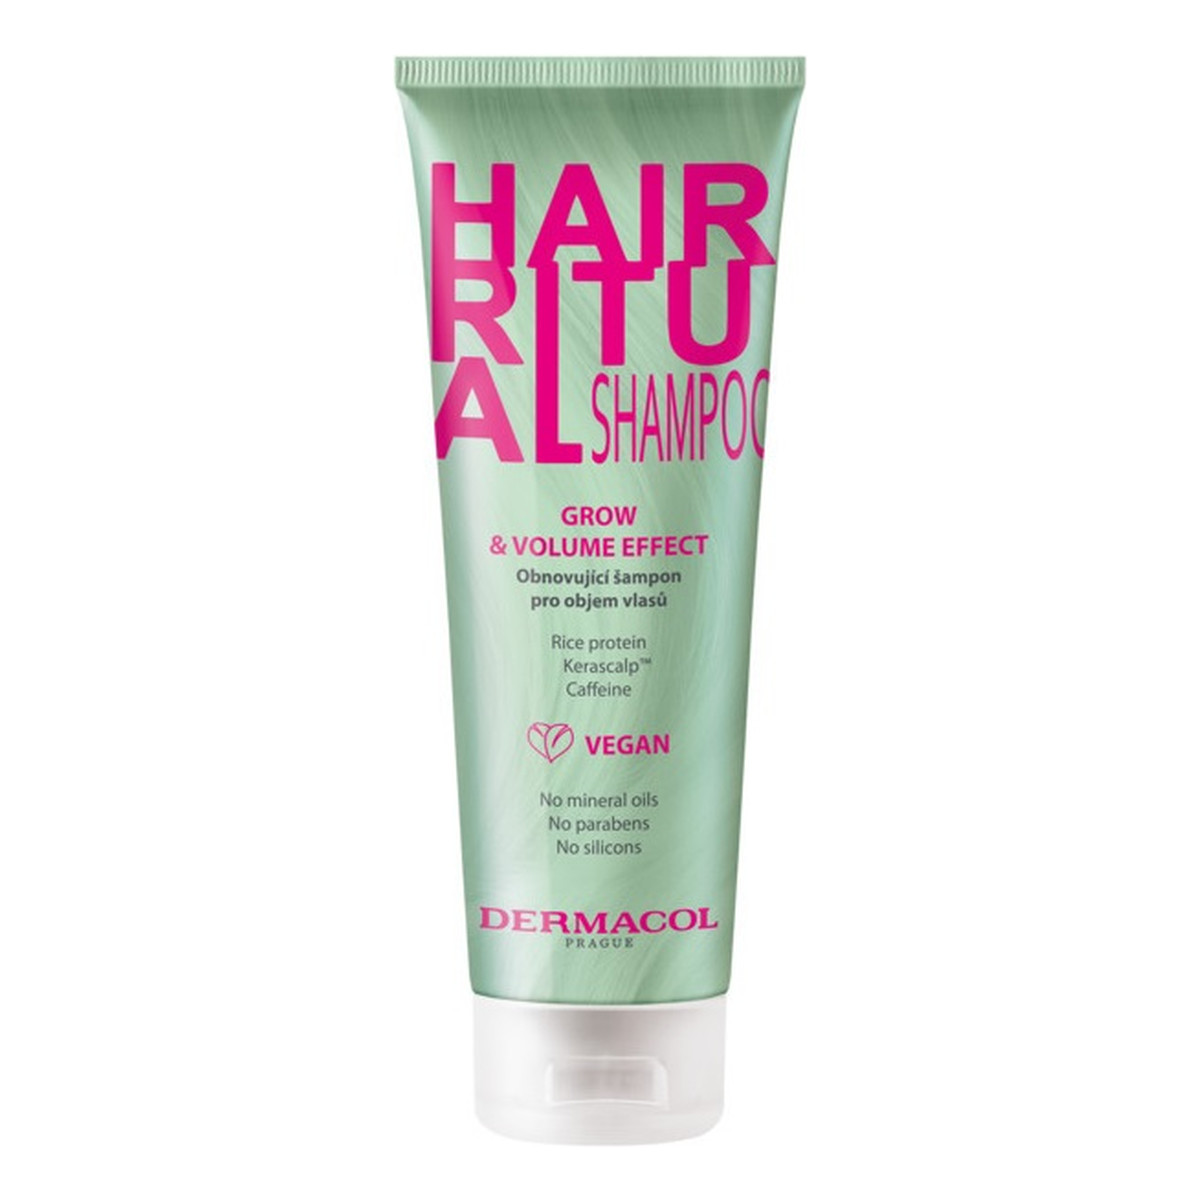 Dermacol Hair ritual shampoo szampon do włosów grow & volume effect 250ml